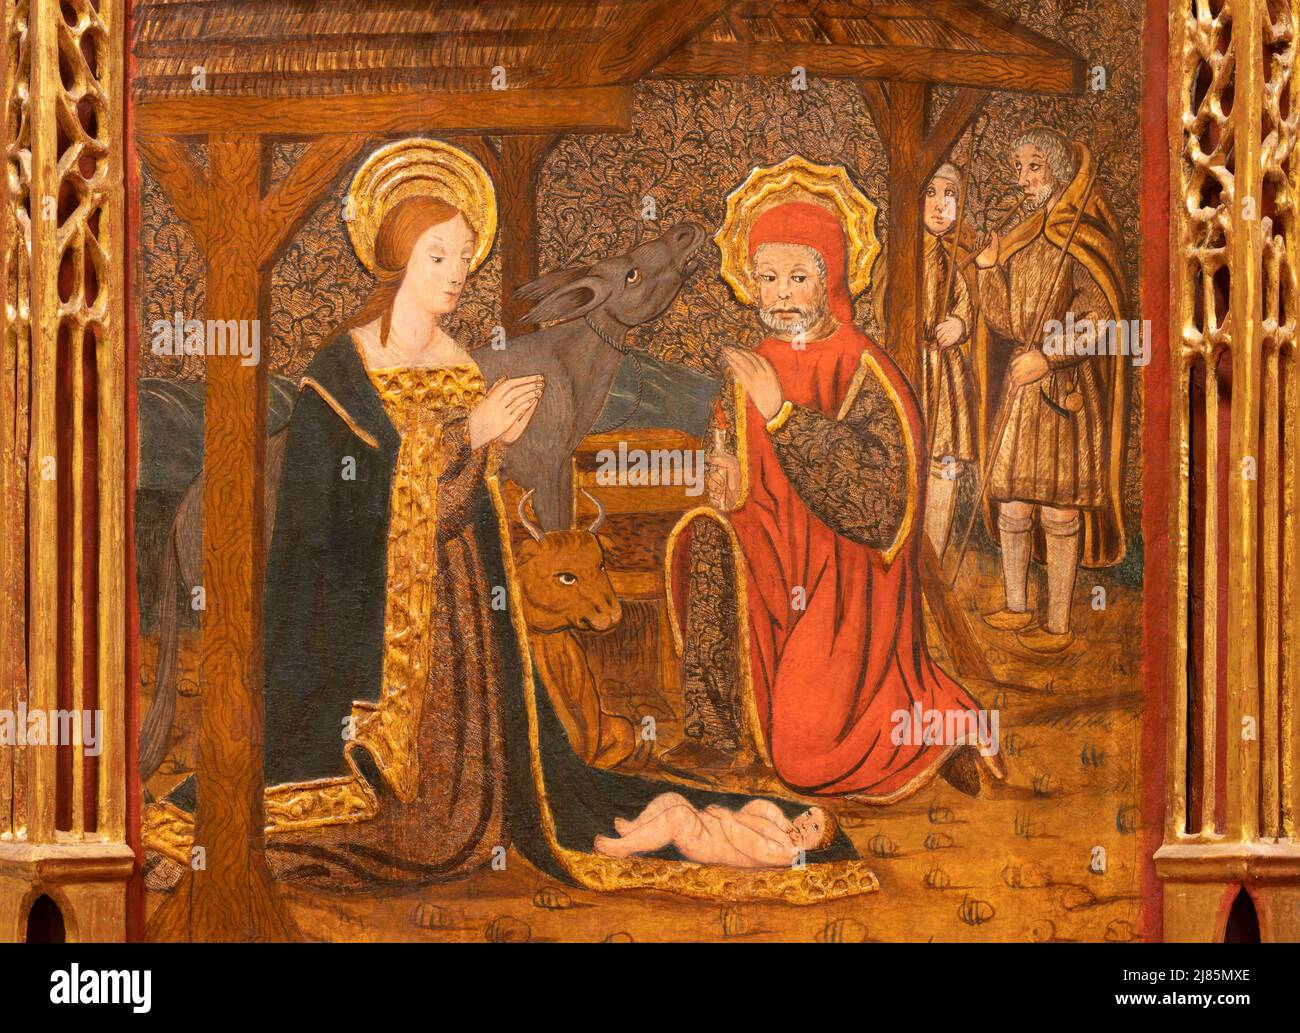 VALENCIA, SPANIEN - 14. FEBRUAR 2022: Das Gemälde der Geburt Christi als Teil des Altars in der Kirche Iglesia San Juan del Hospital von einem unbekannten Künstler Stockfoto